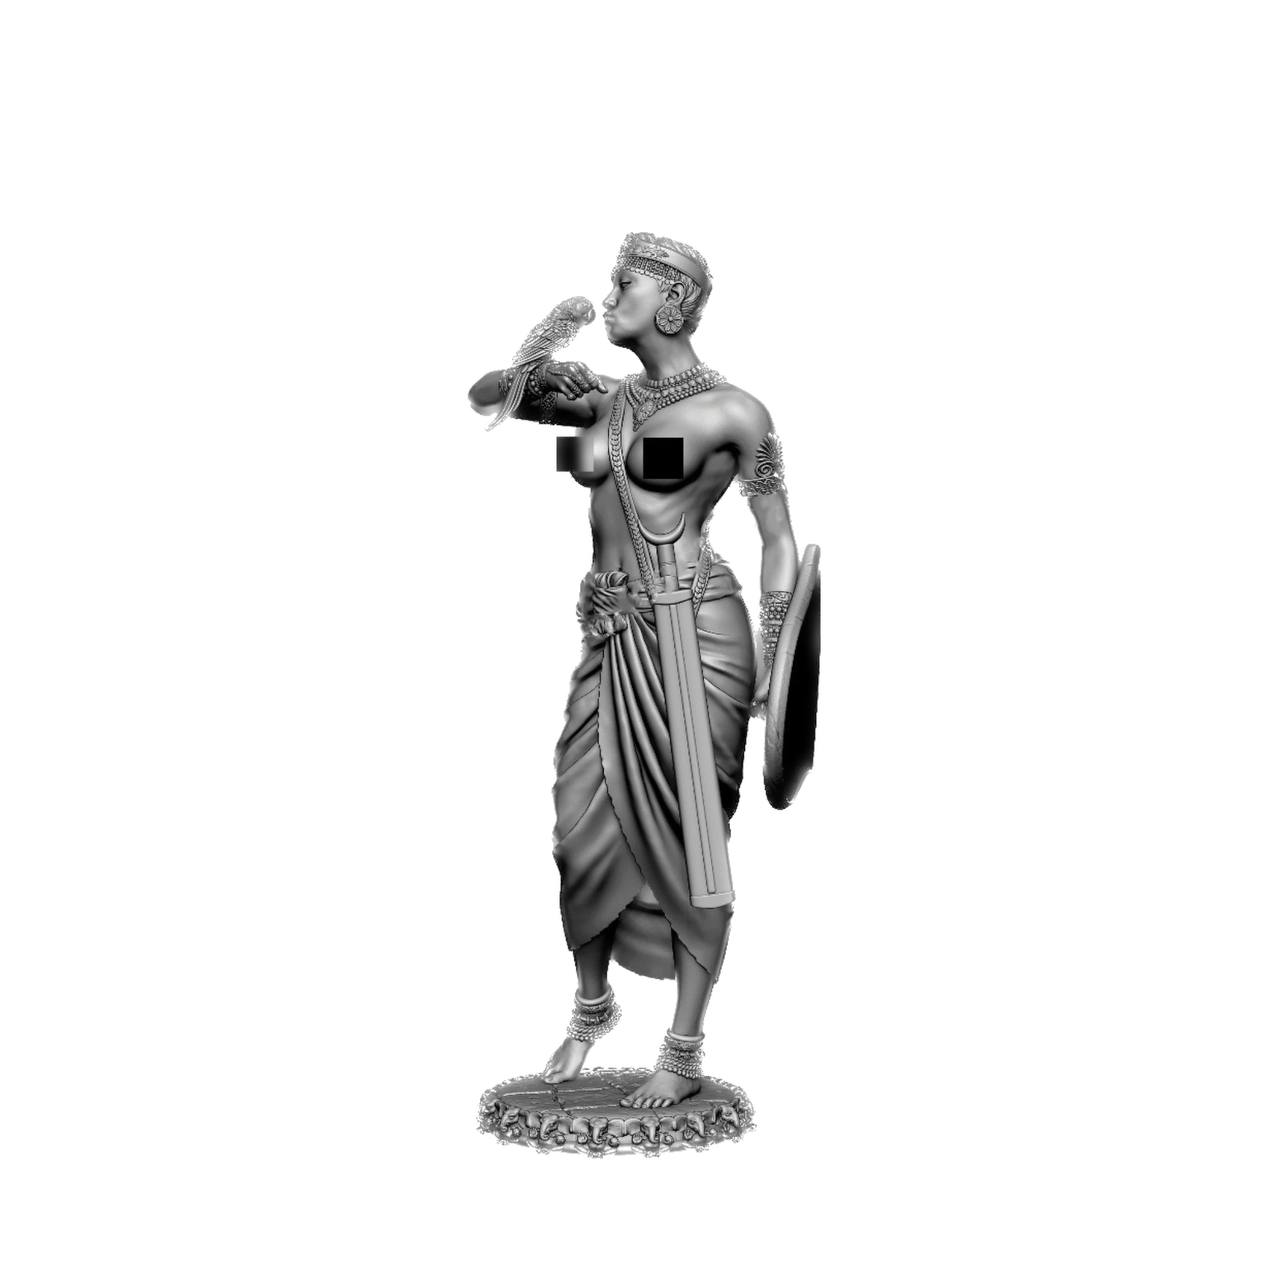 CHM-75061. Индийская женщина-телохранитель, 4-2 века до н.э. Материал - смола.